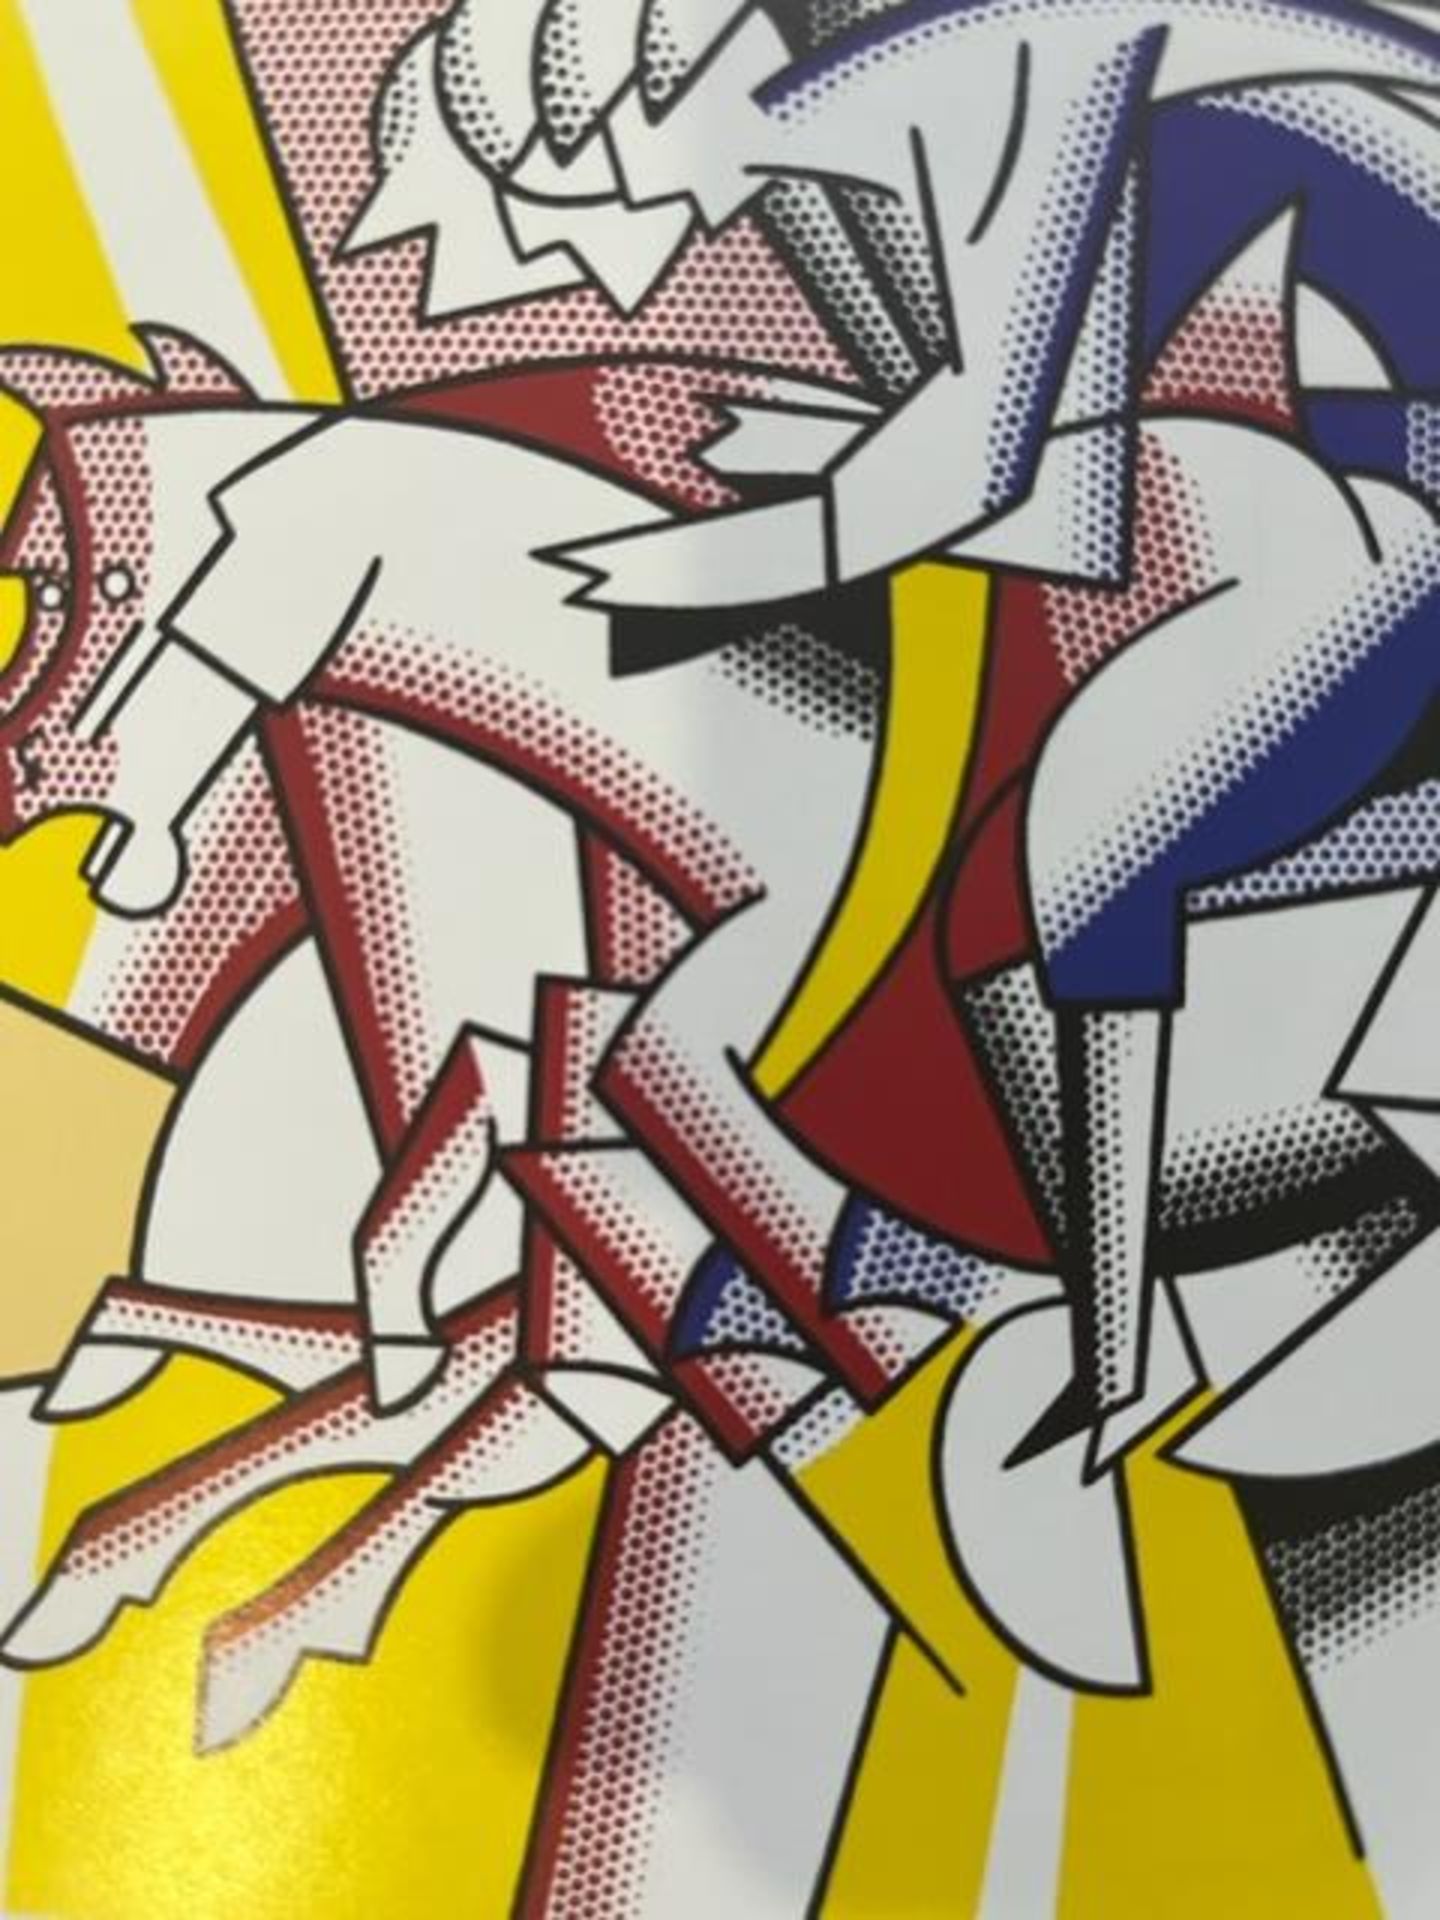 Roy Lichtenstein "Horses" Print. - Image 4 of 6